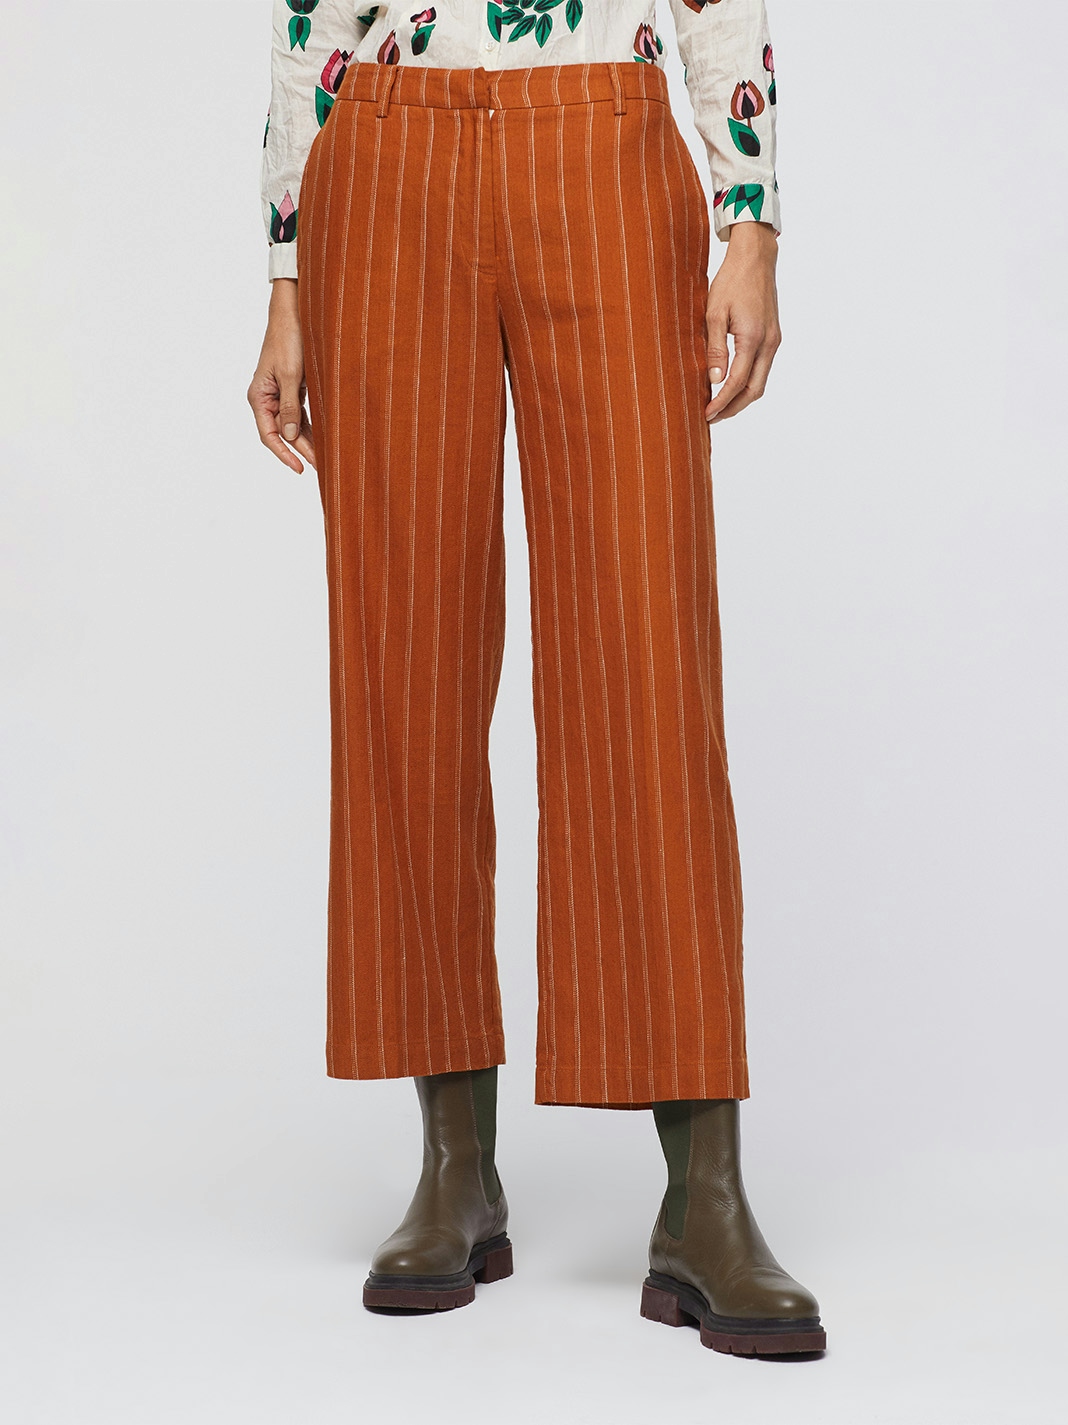 Striped linen pants